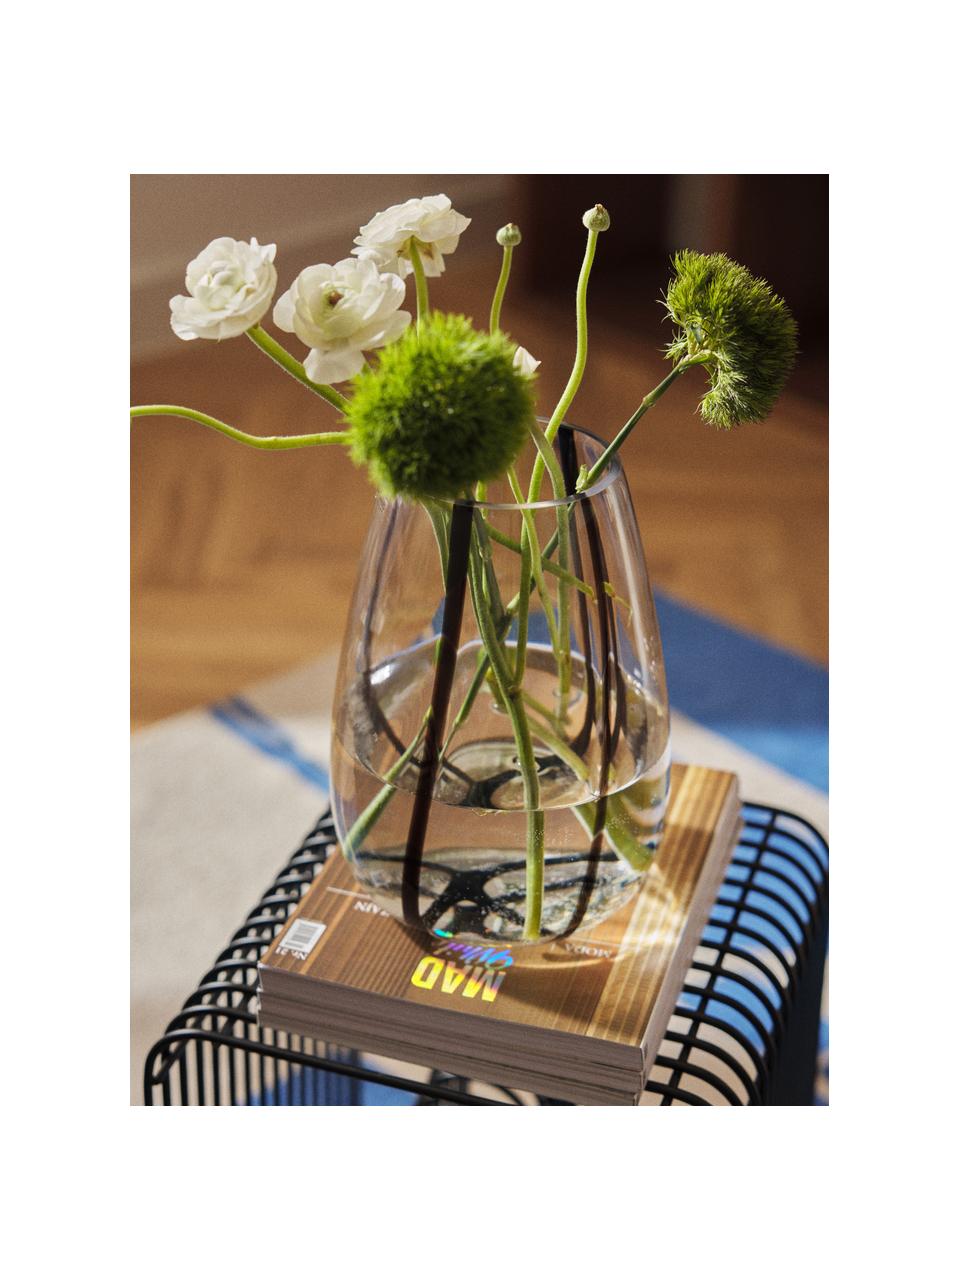 Skleněná váza Kira, V 26 cm, Sklo, Transparentní, černá, Š 19 cm, V 26 cm